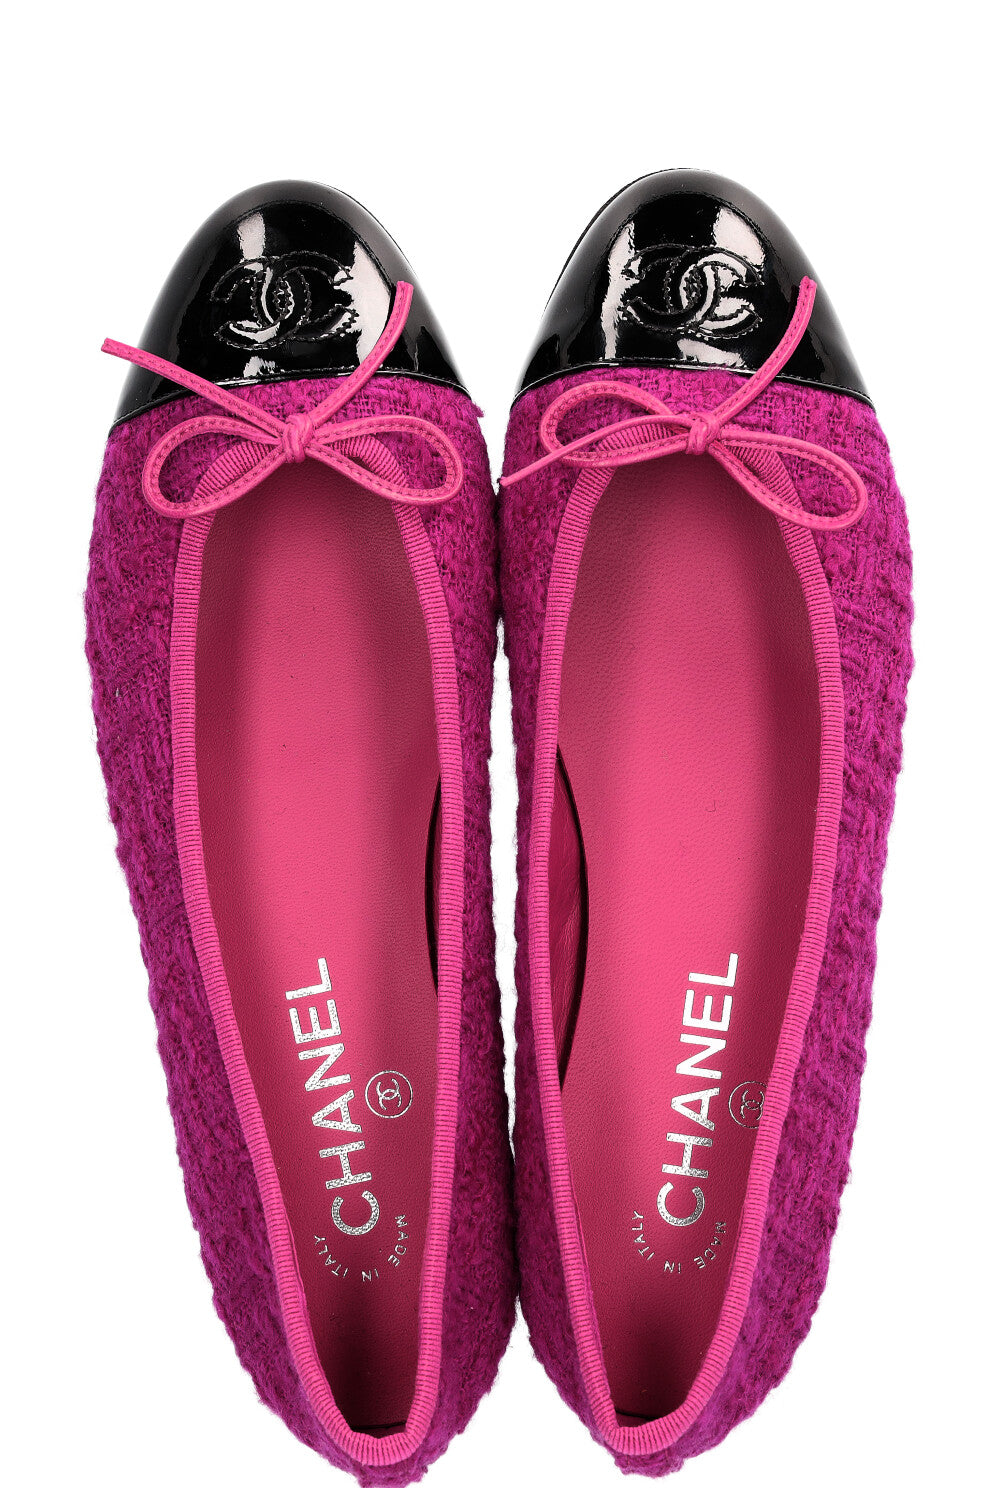 CHANEL Ballerina Flats Tweed Pink